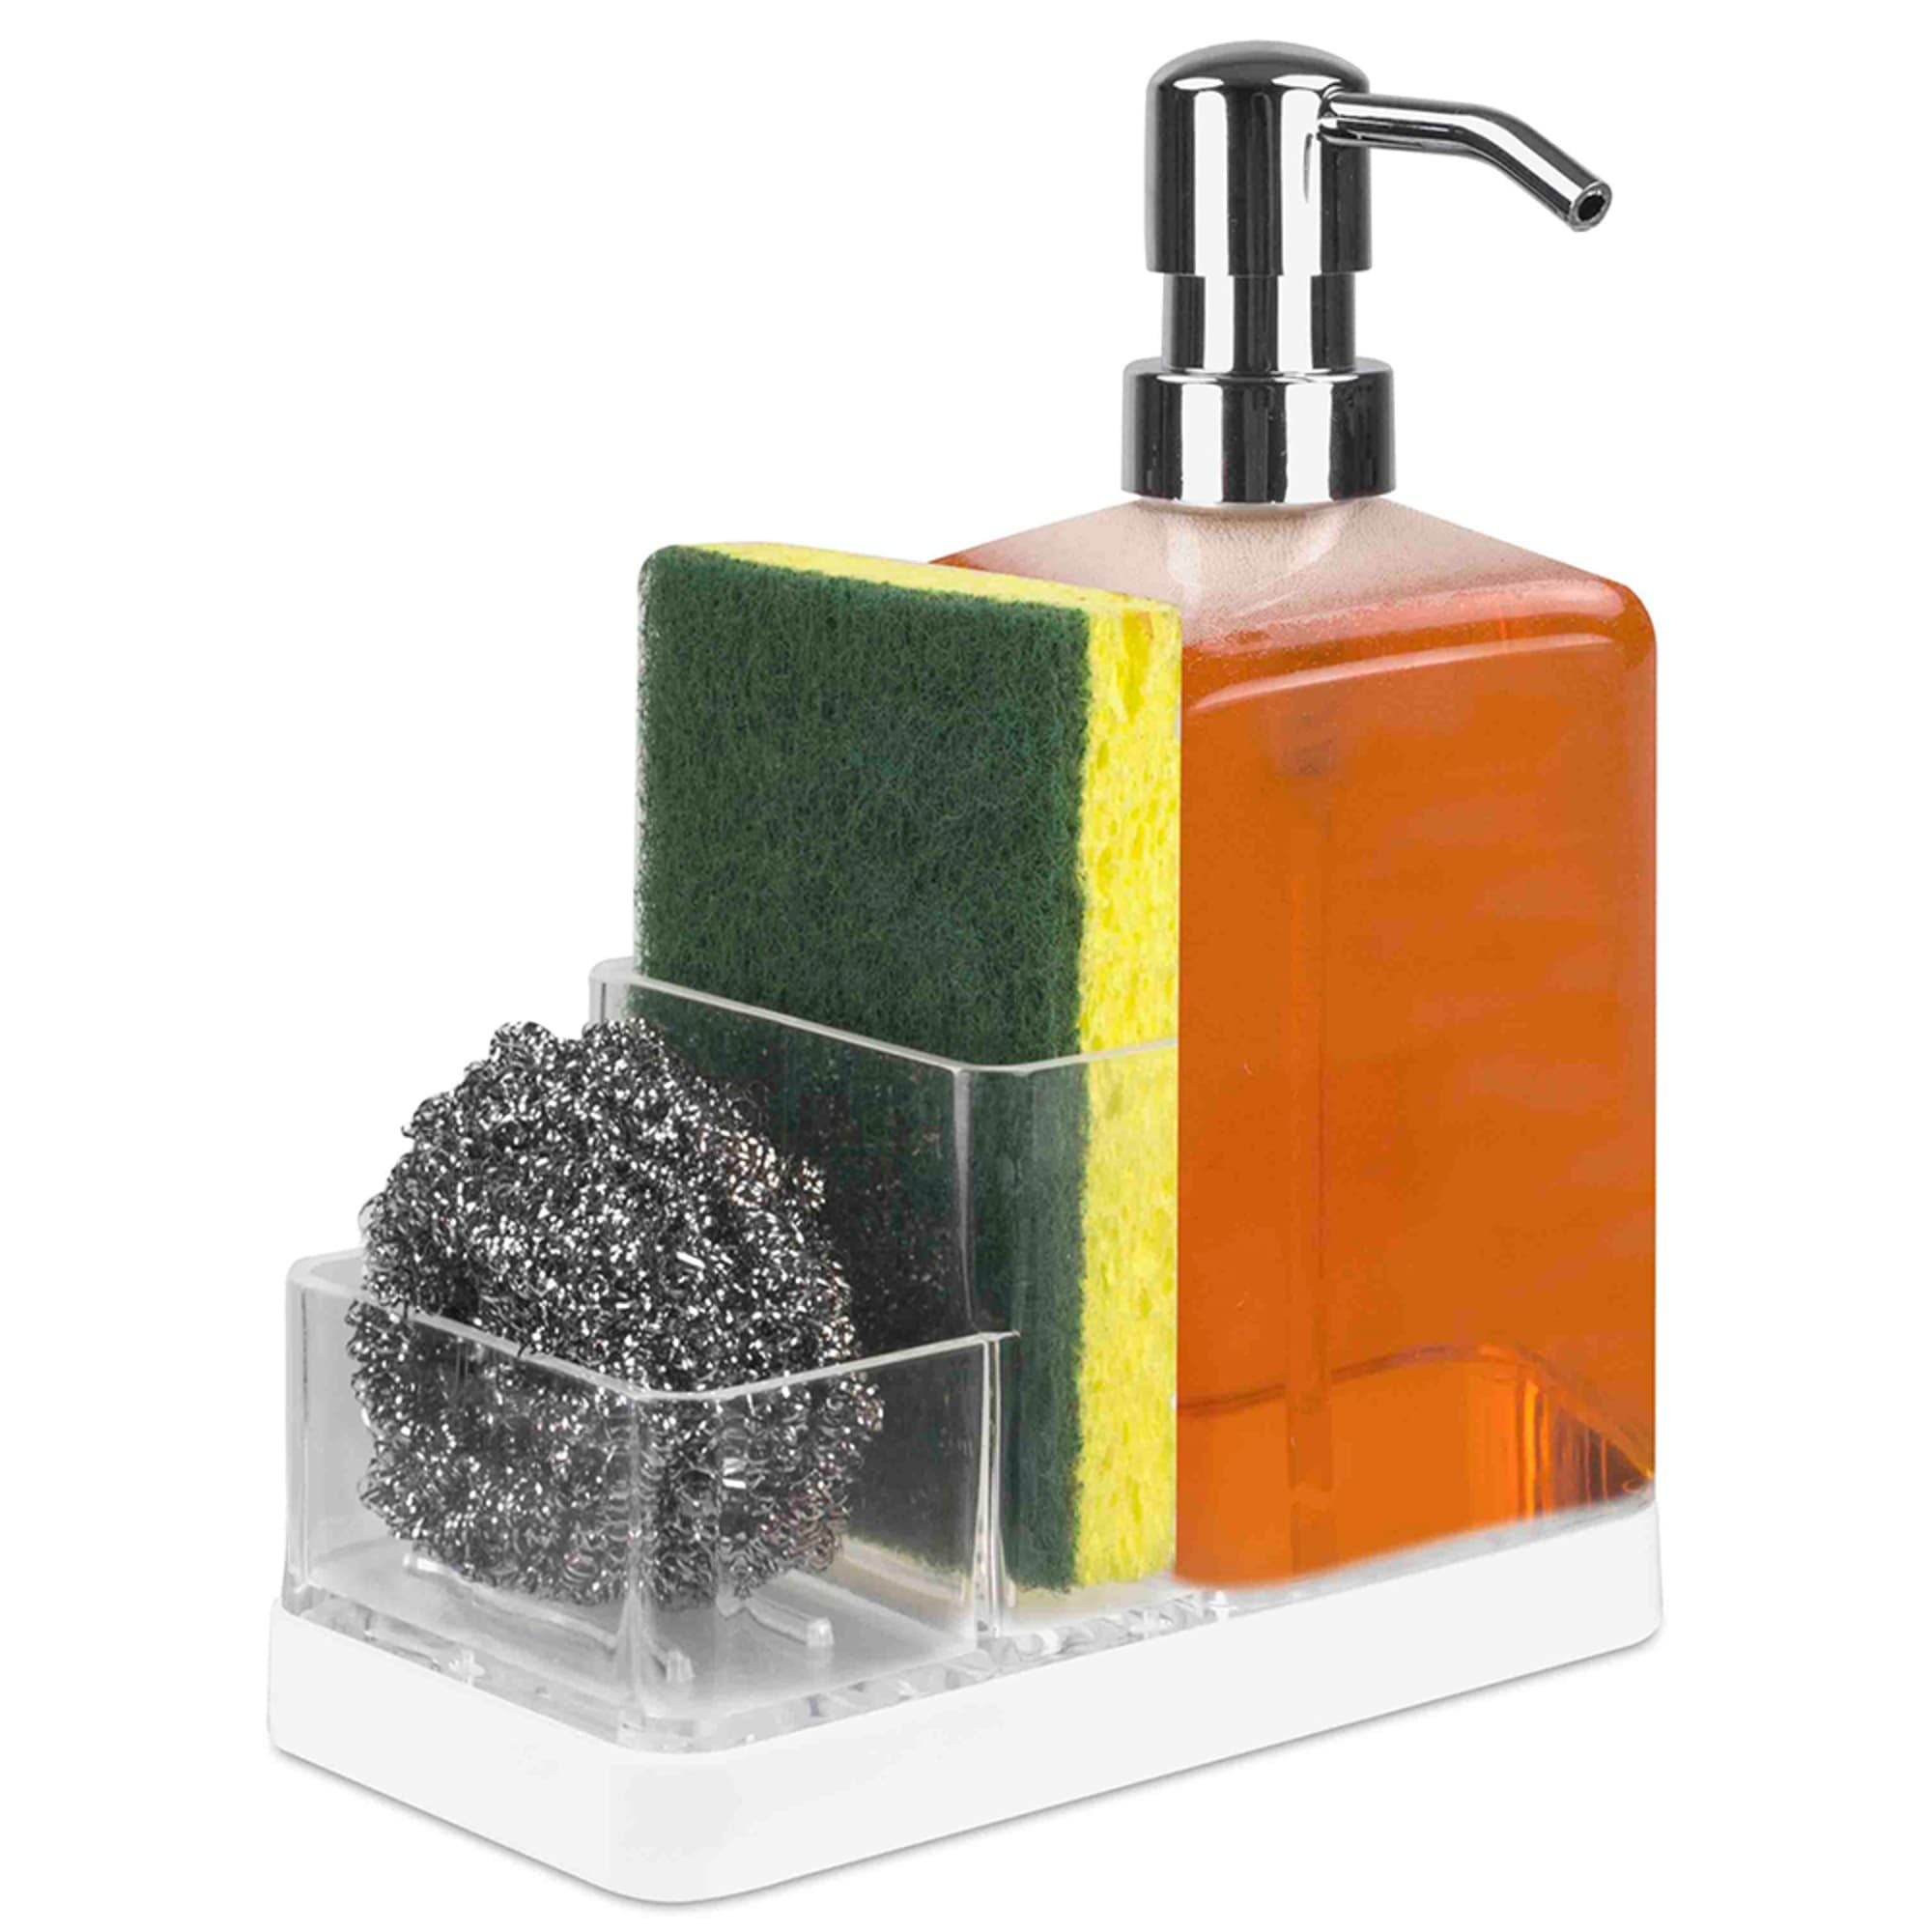 Home Basics Soap Dispenser Organizer $7.00 EACH, CASE PACK OF 12